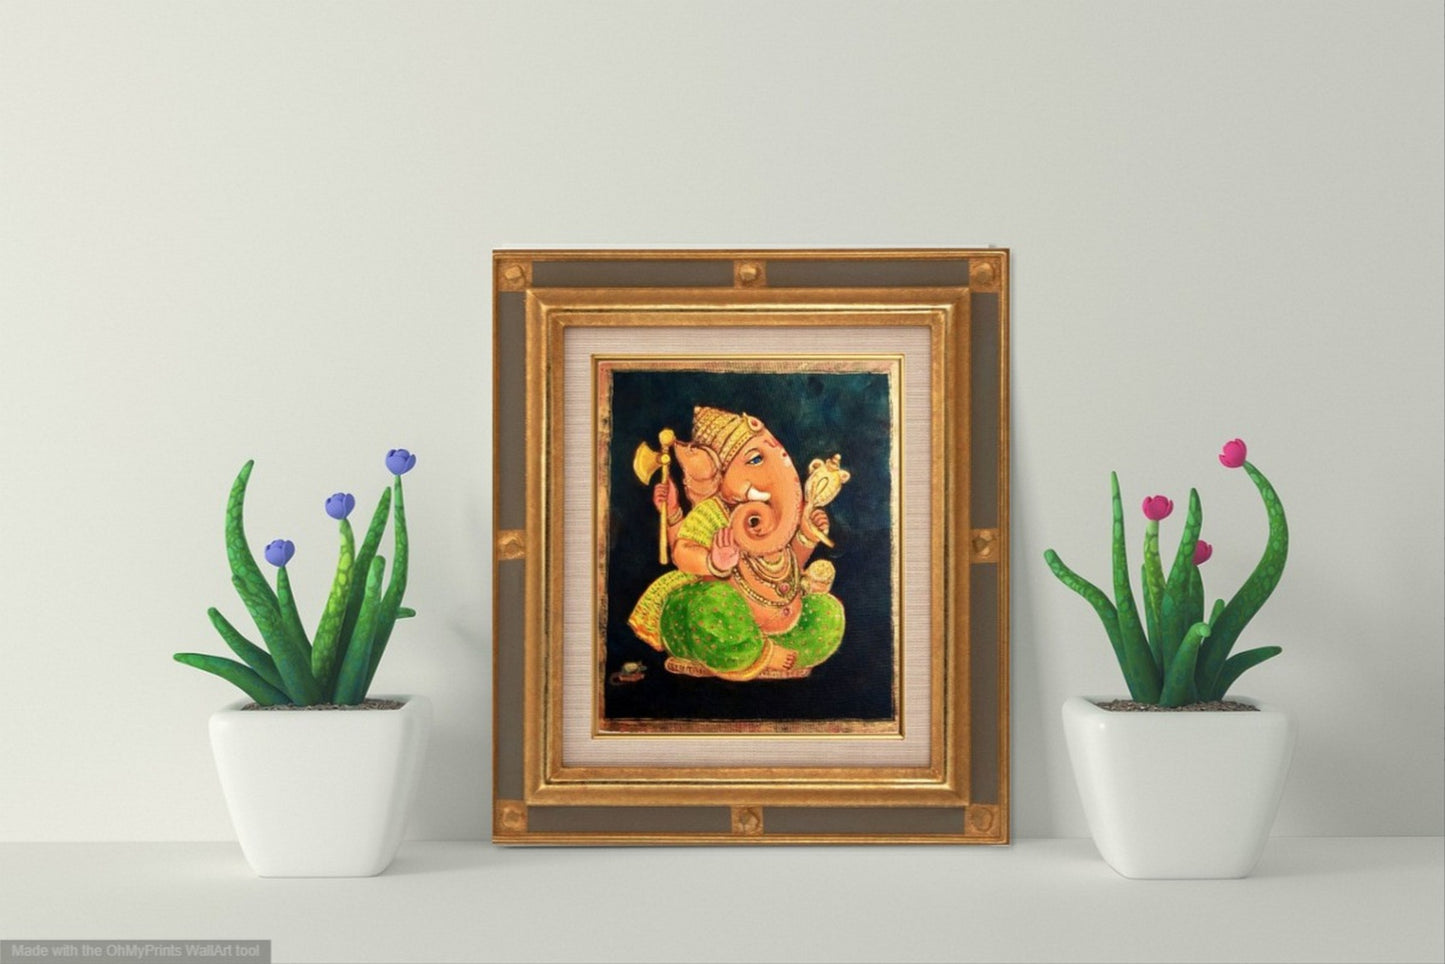 Lord Ganesha The Ultimate, œuvre d'art du Dieu indien sur toile